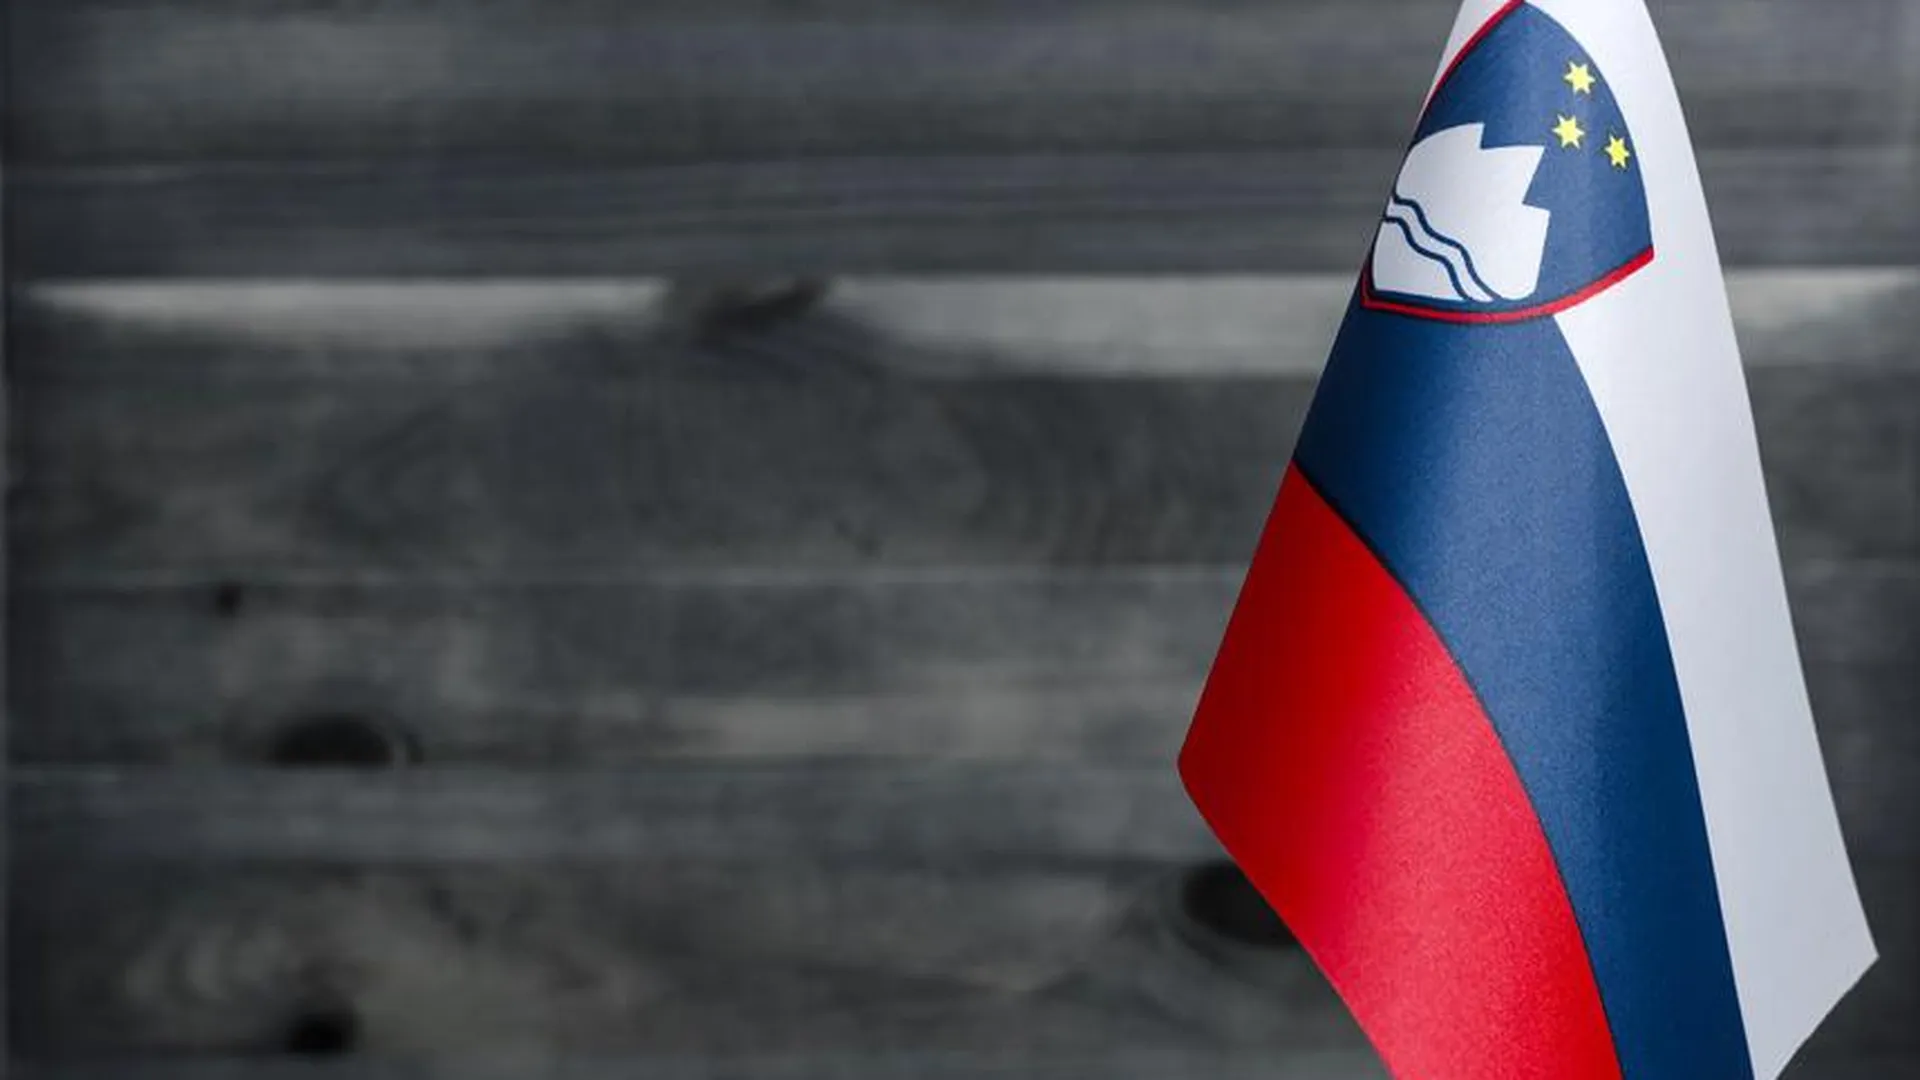 МИД РФ выразил решительный протест послу Словении за отзыв лицензии сотрудника